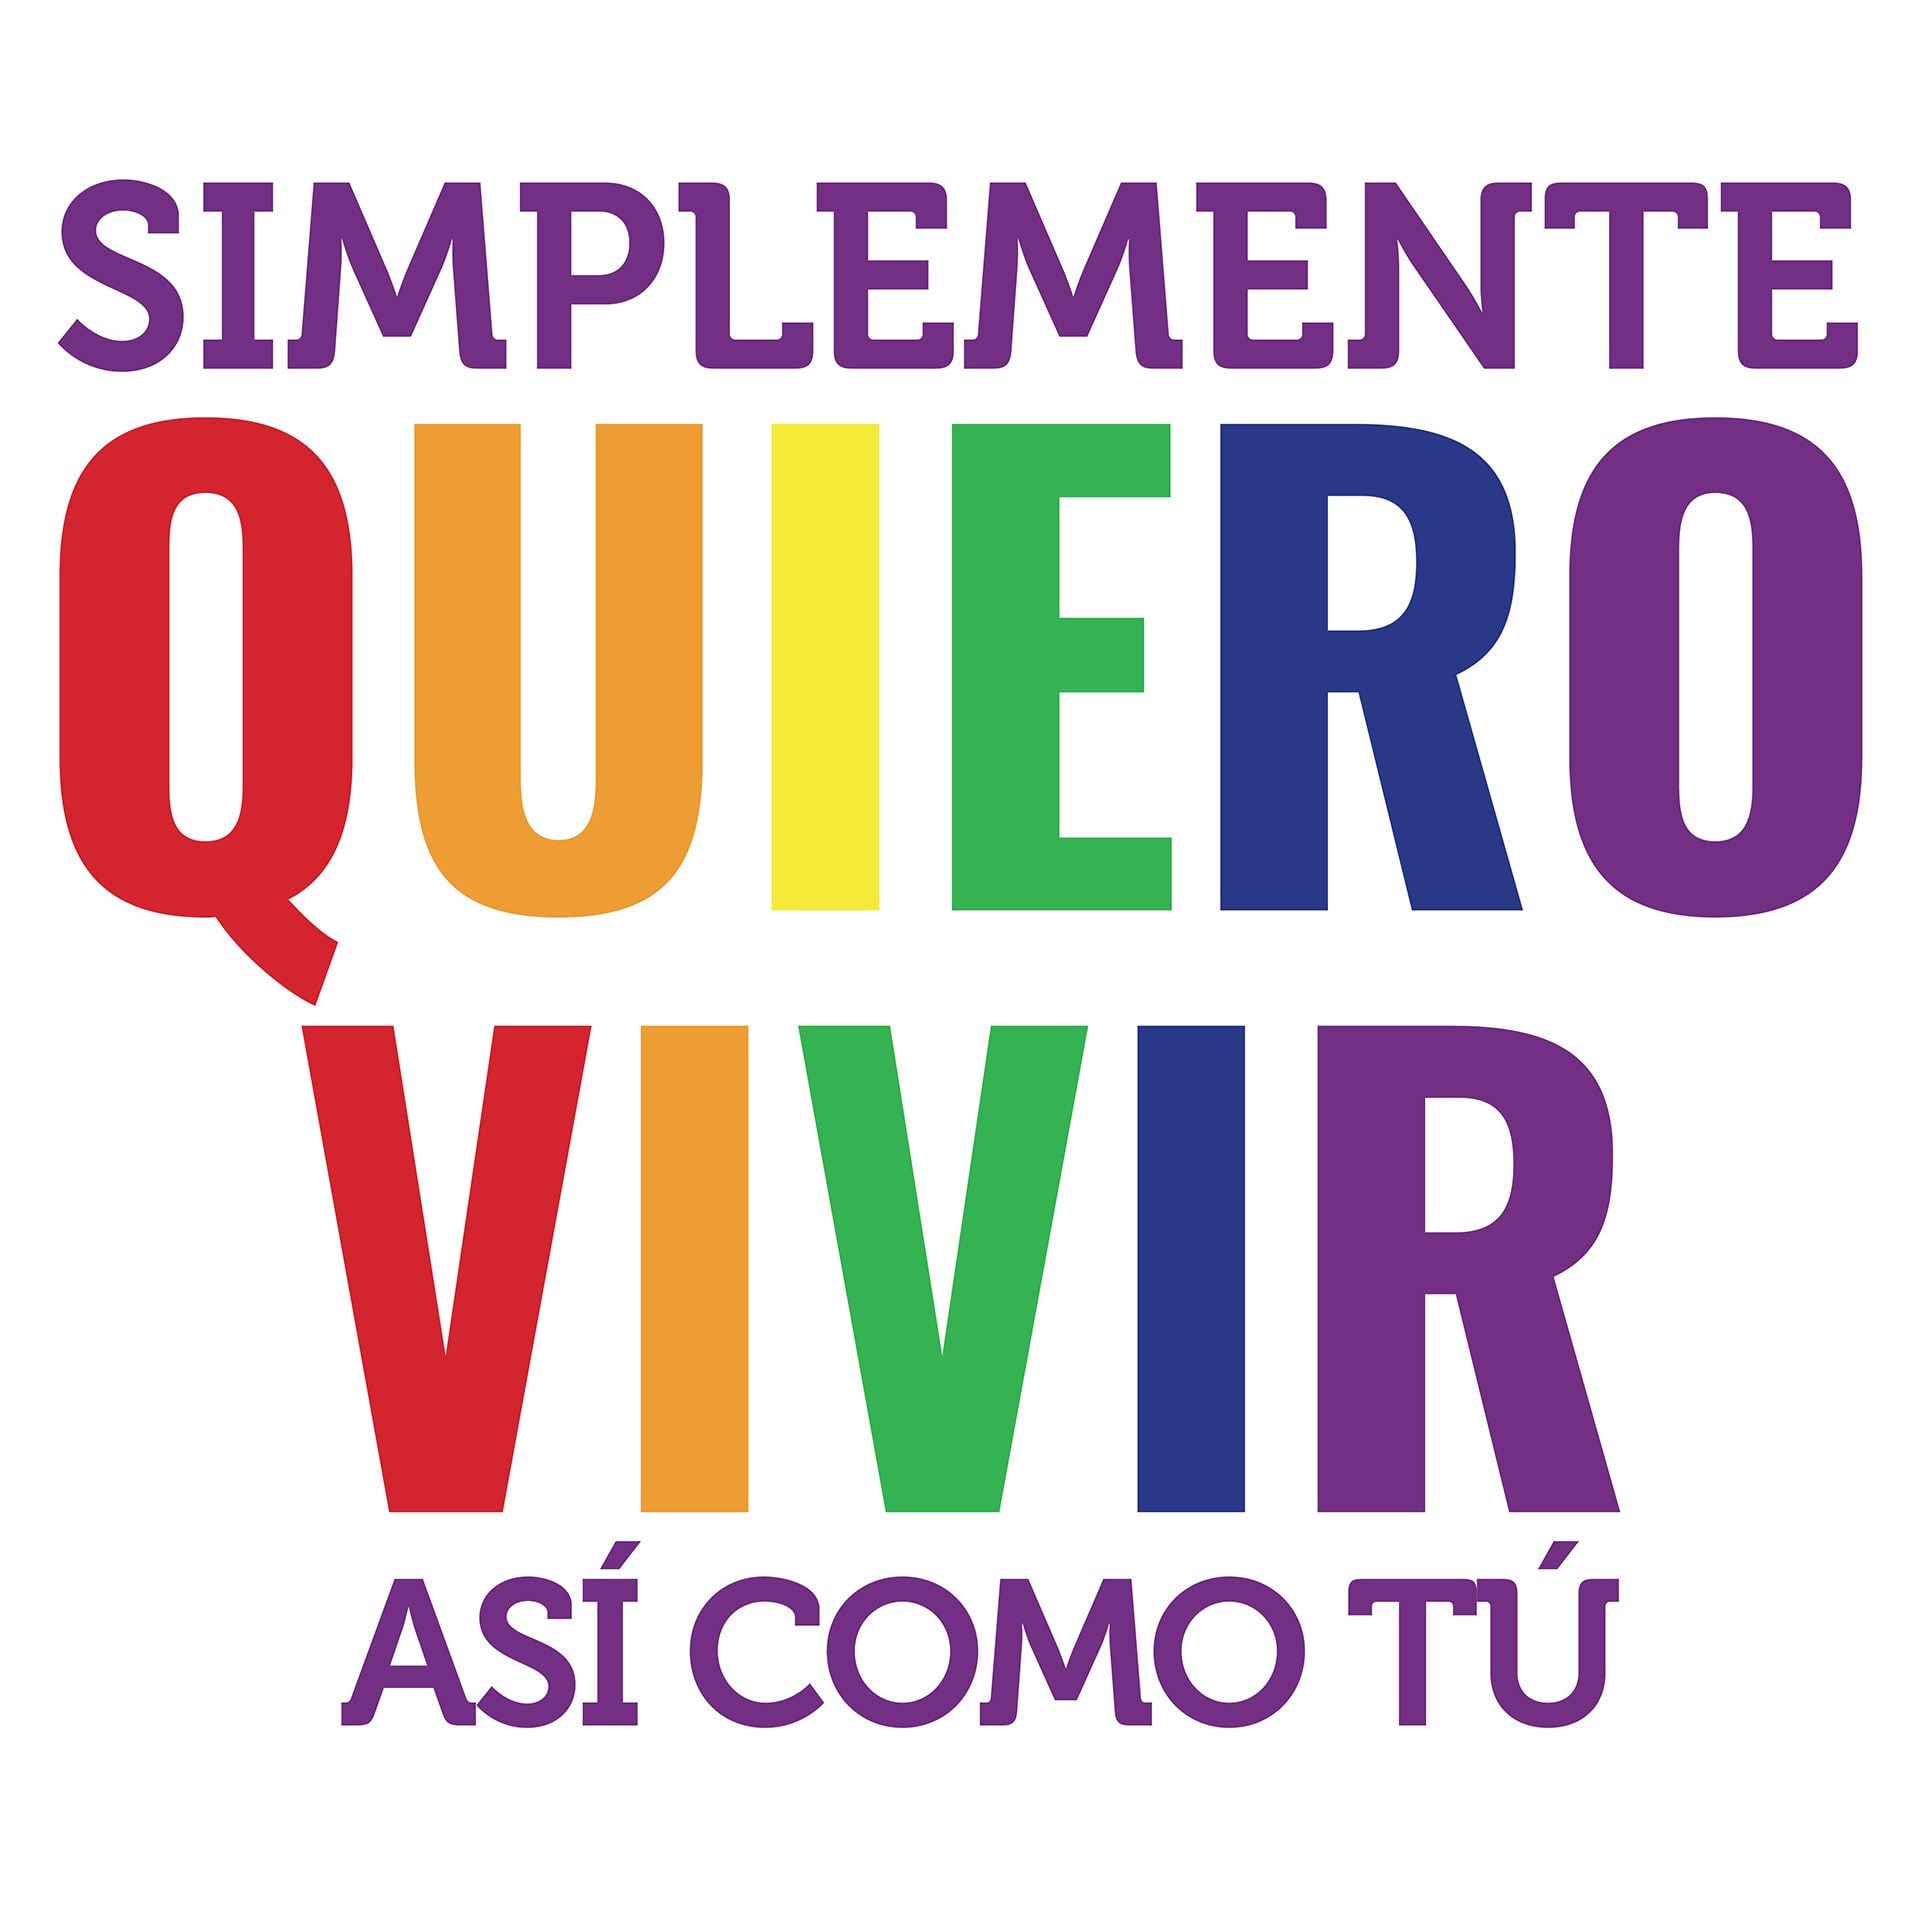 “Simplemente quiero vivir, así como tú” es el lema de una campaña que articula las luchas de la población trans en Venezuela, Honduras y El Salvador